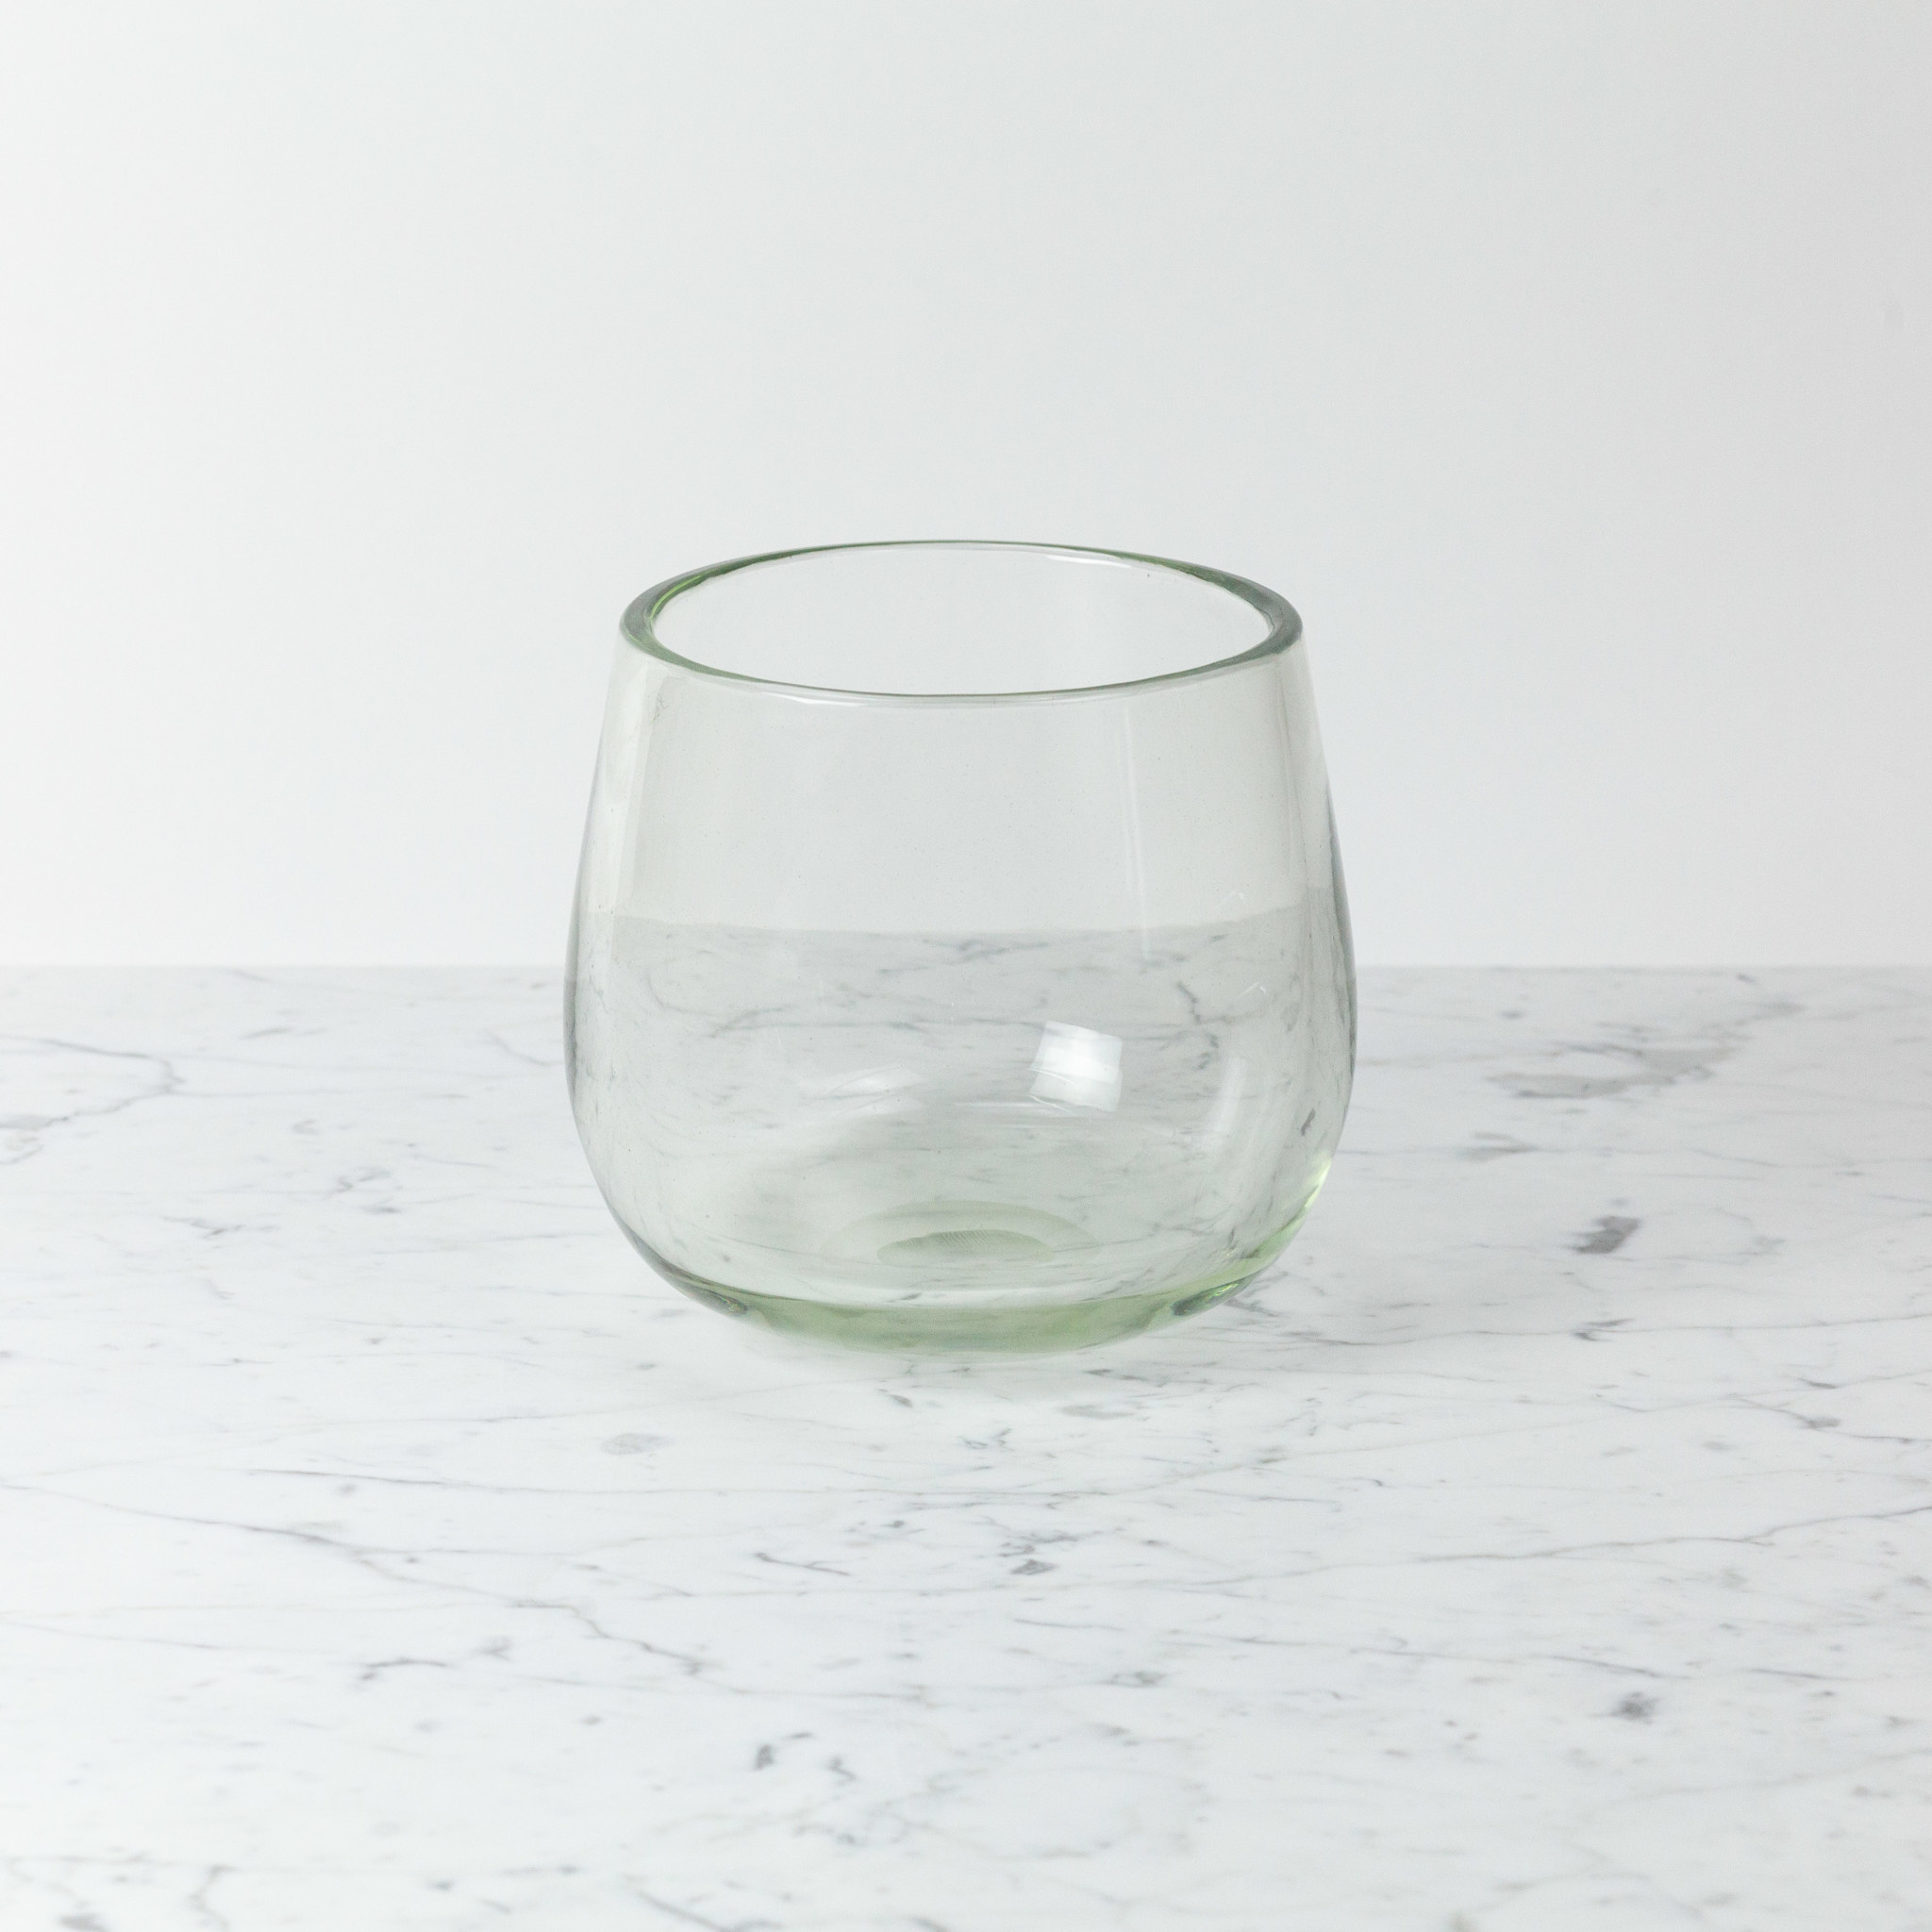 Small Clovis Vessel - Clear Glass - 6.5"